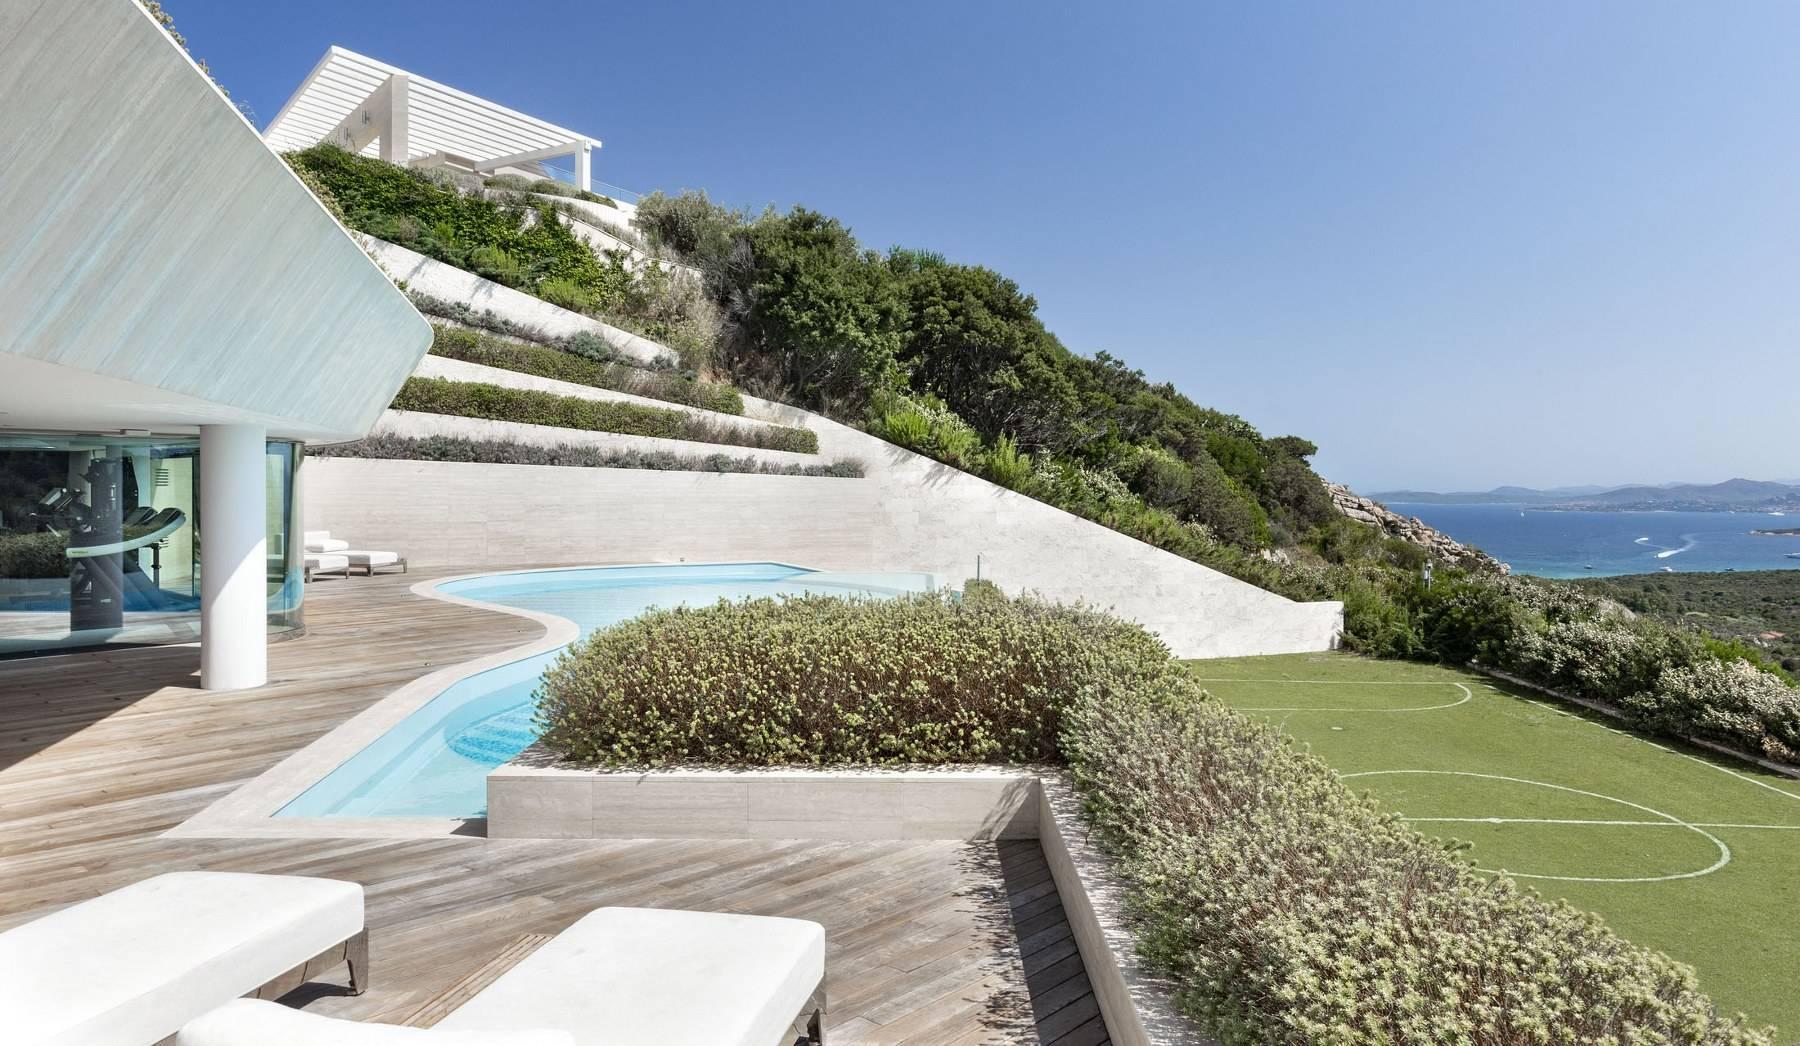 Glamour - Prestigious and elegant villa located in the heart of the Costa Smeralda - 24